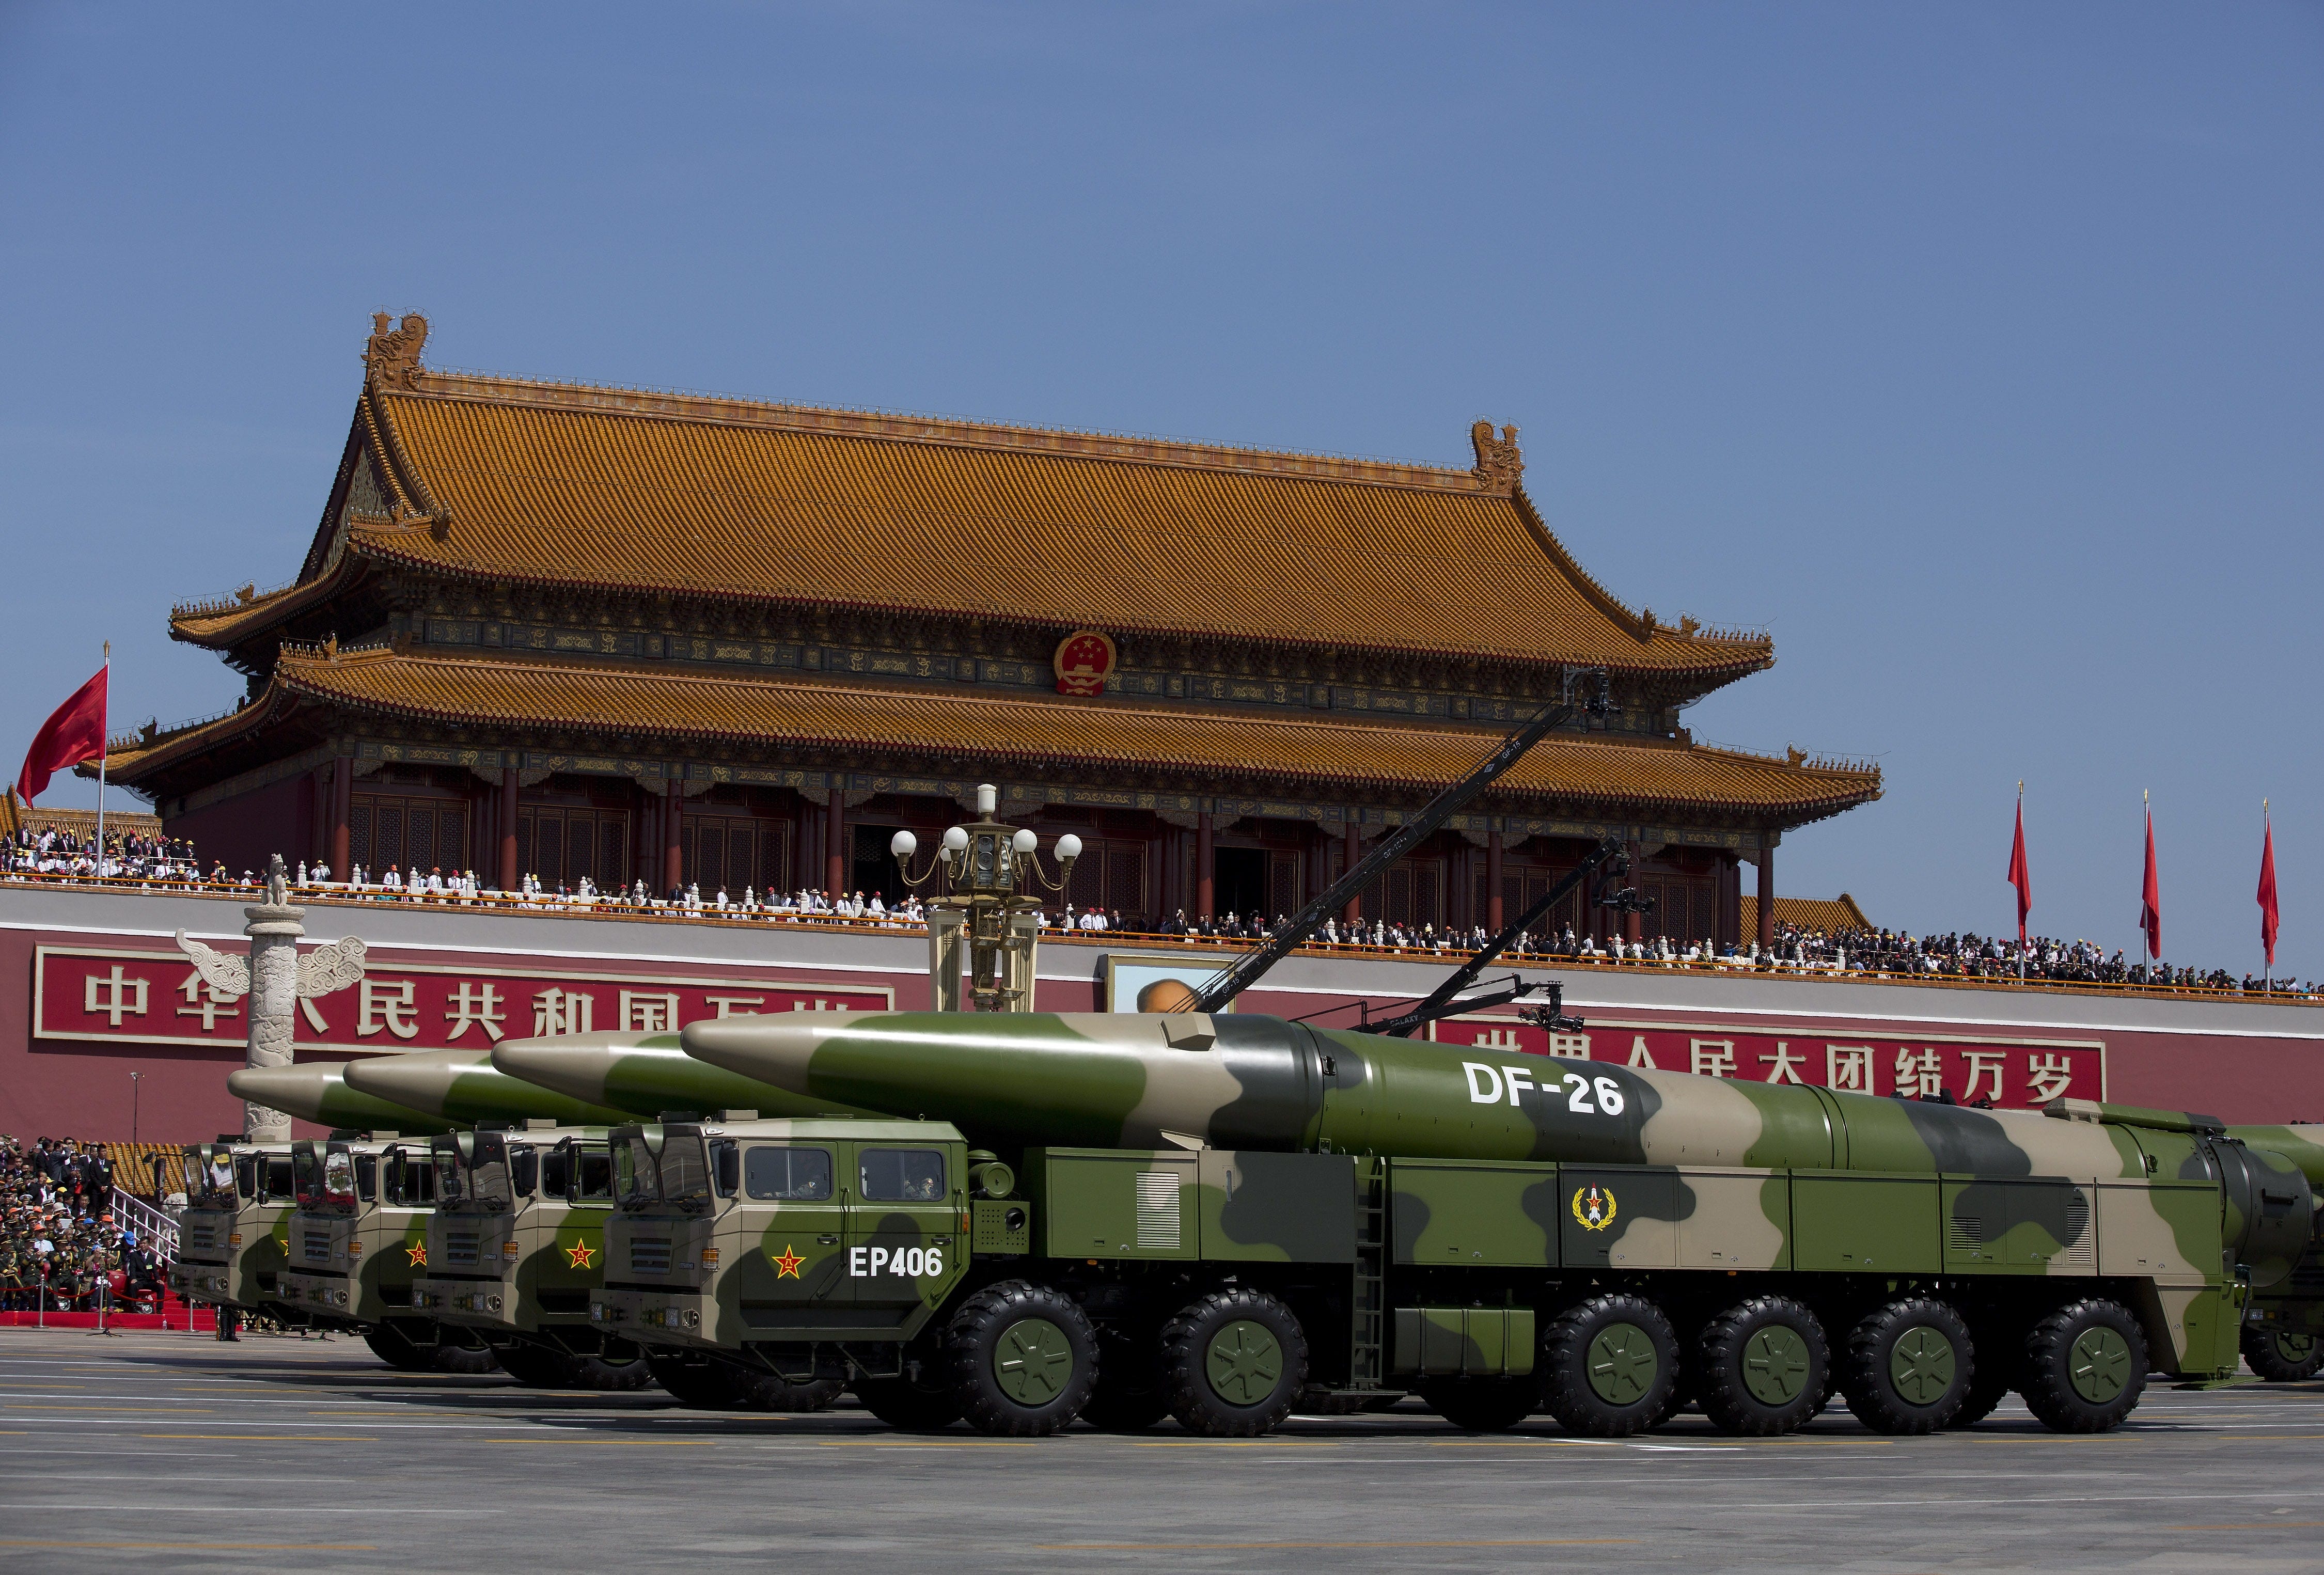 Militärfahrzeuge mit ballistischen DF-26-Raketen fahren während einer Militärparade anlässlich des 70. Jahrestages des Endes des Zweiten Weltkriegs am 3. September 2015 in Peking, China, am Tiananmen-Tor vorbei.